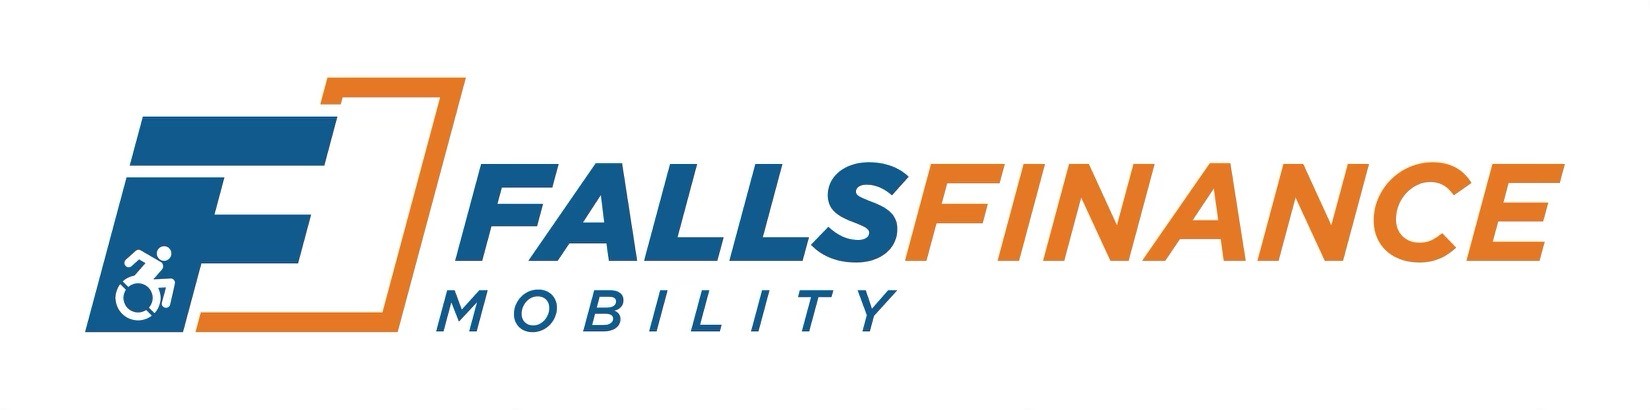 Falls Mobility Finance Logo